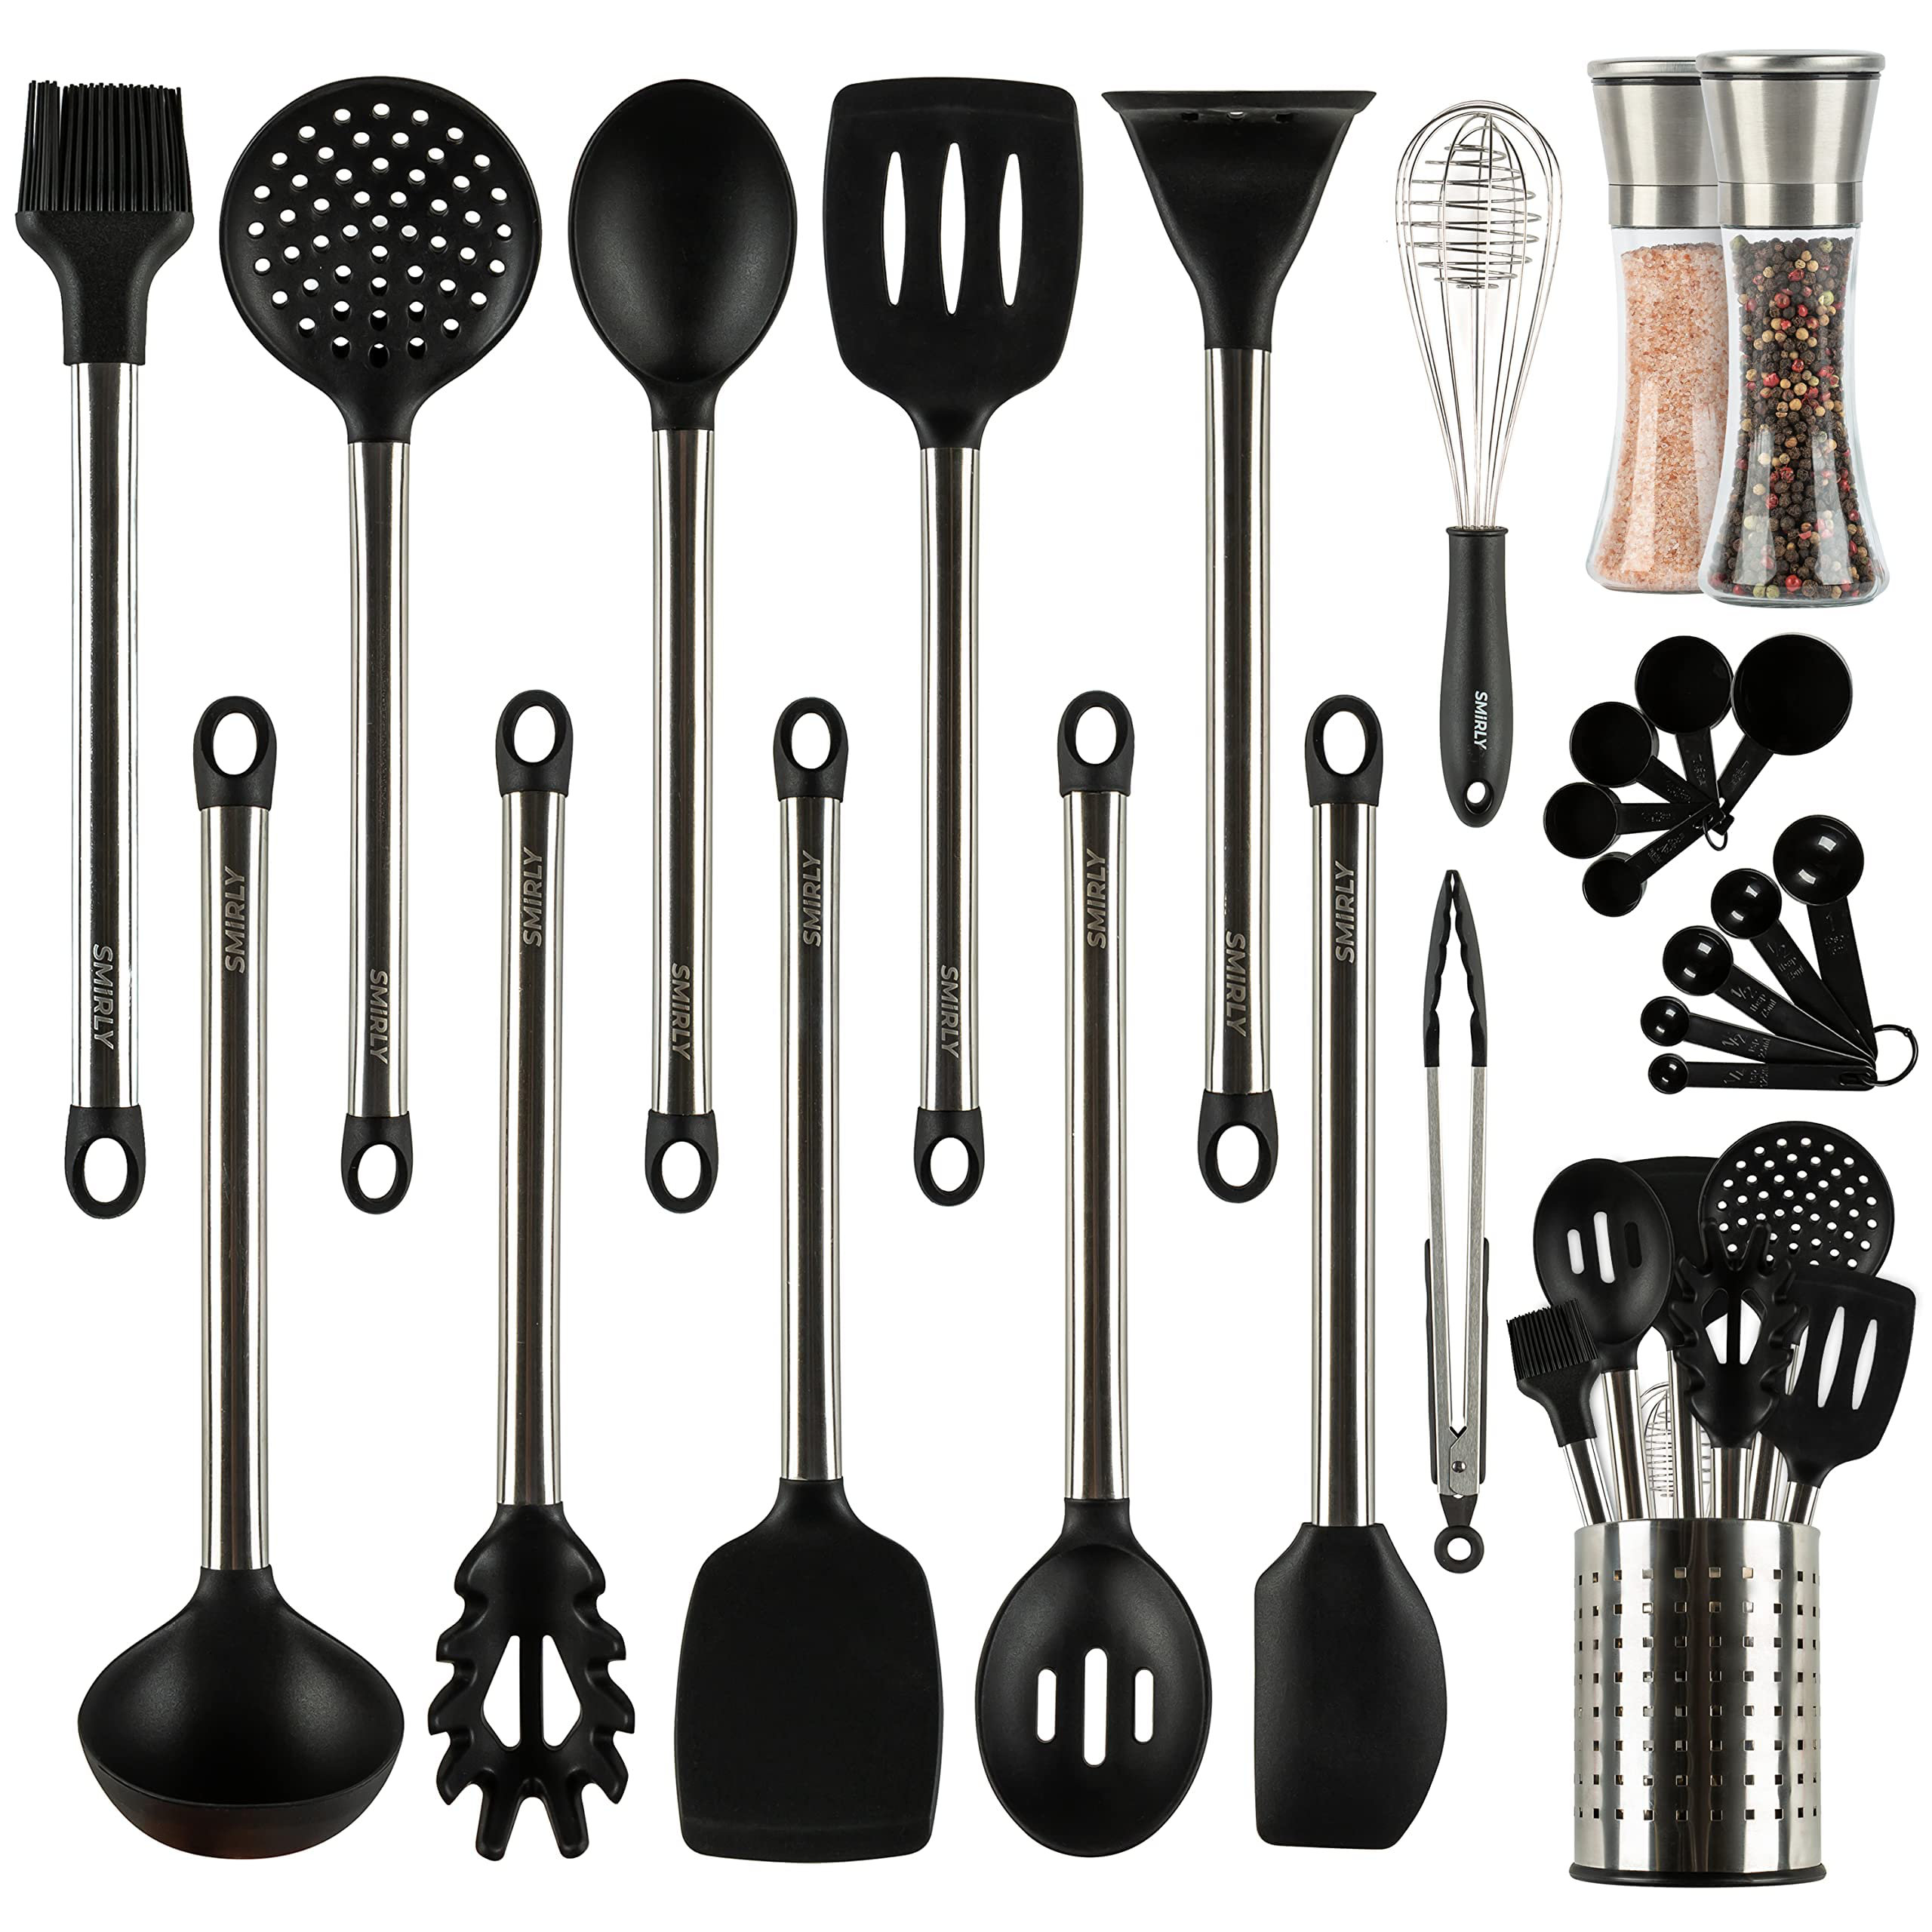 https://assets.wfcdn.com/im/46392489/compr-r85/2418/241851064/35-piece-silicone-assorted-kitchen-utensil-set.jpg